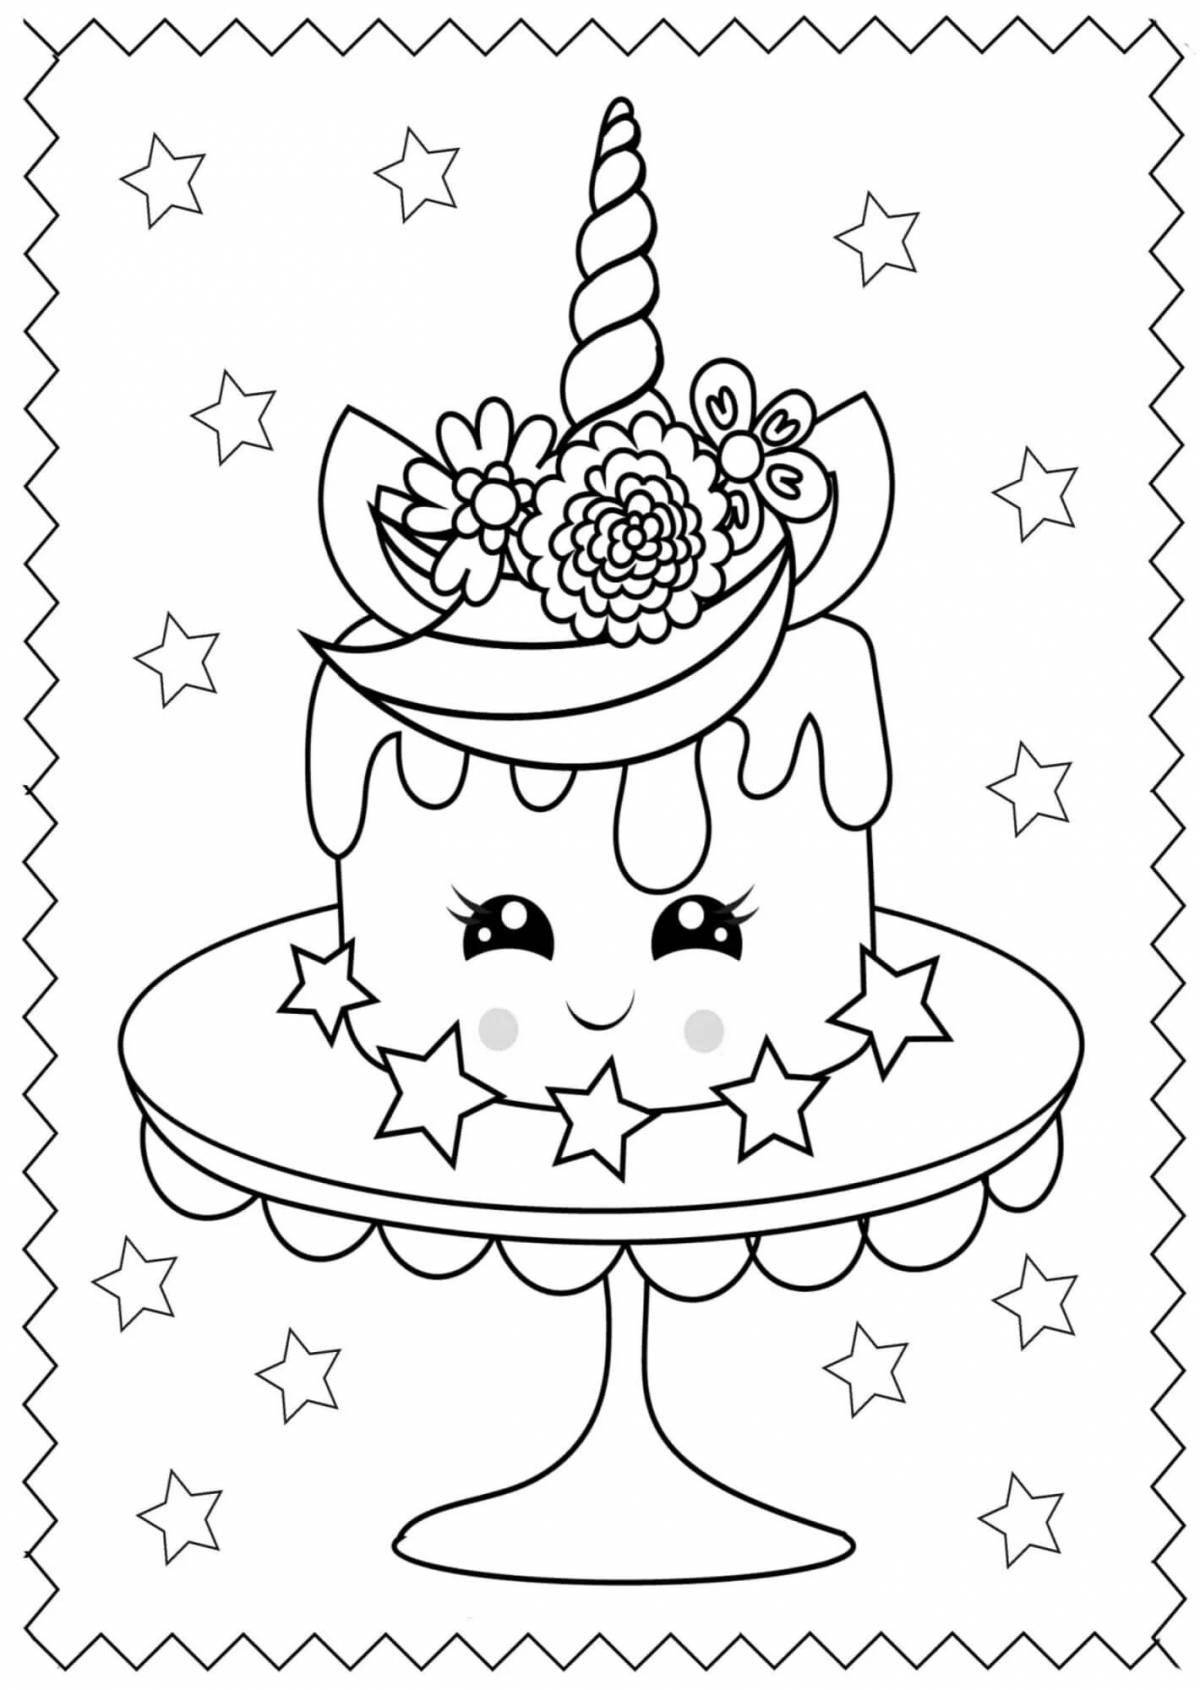 Unicorn cake glitter coloring book